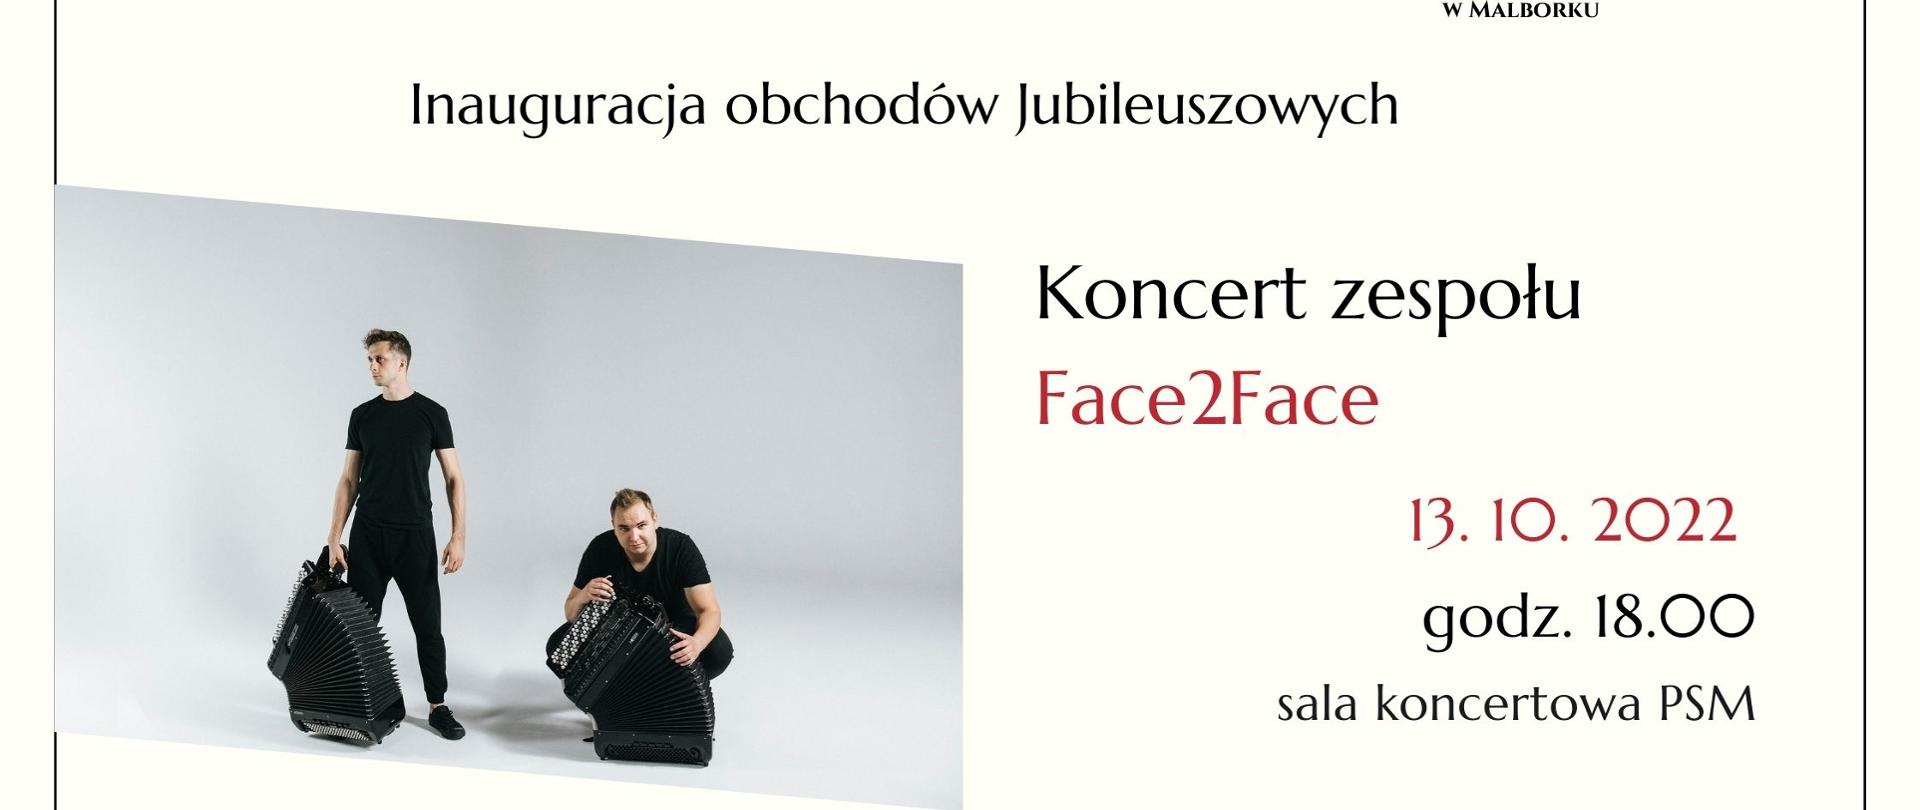 zdjęcie przedstawia członków zespołu Face 2 Face, trzymających akordeony. W treści są data i miejsce wydarzenia